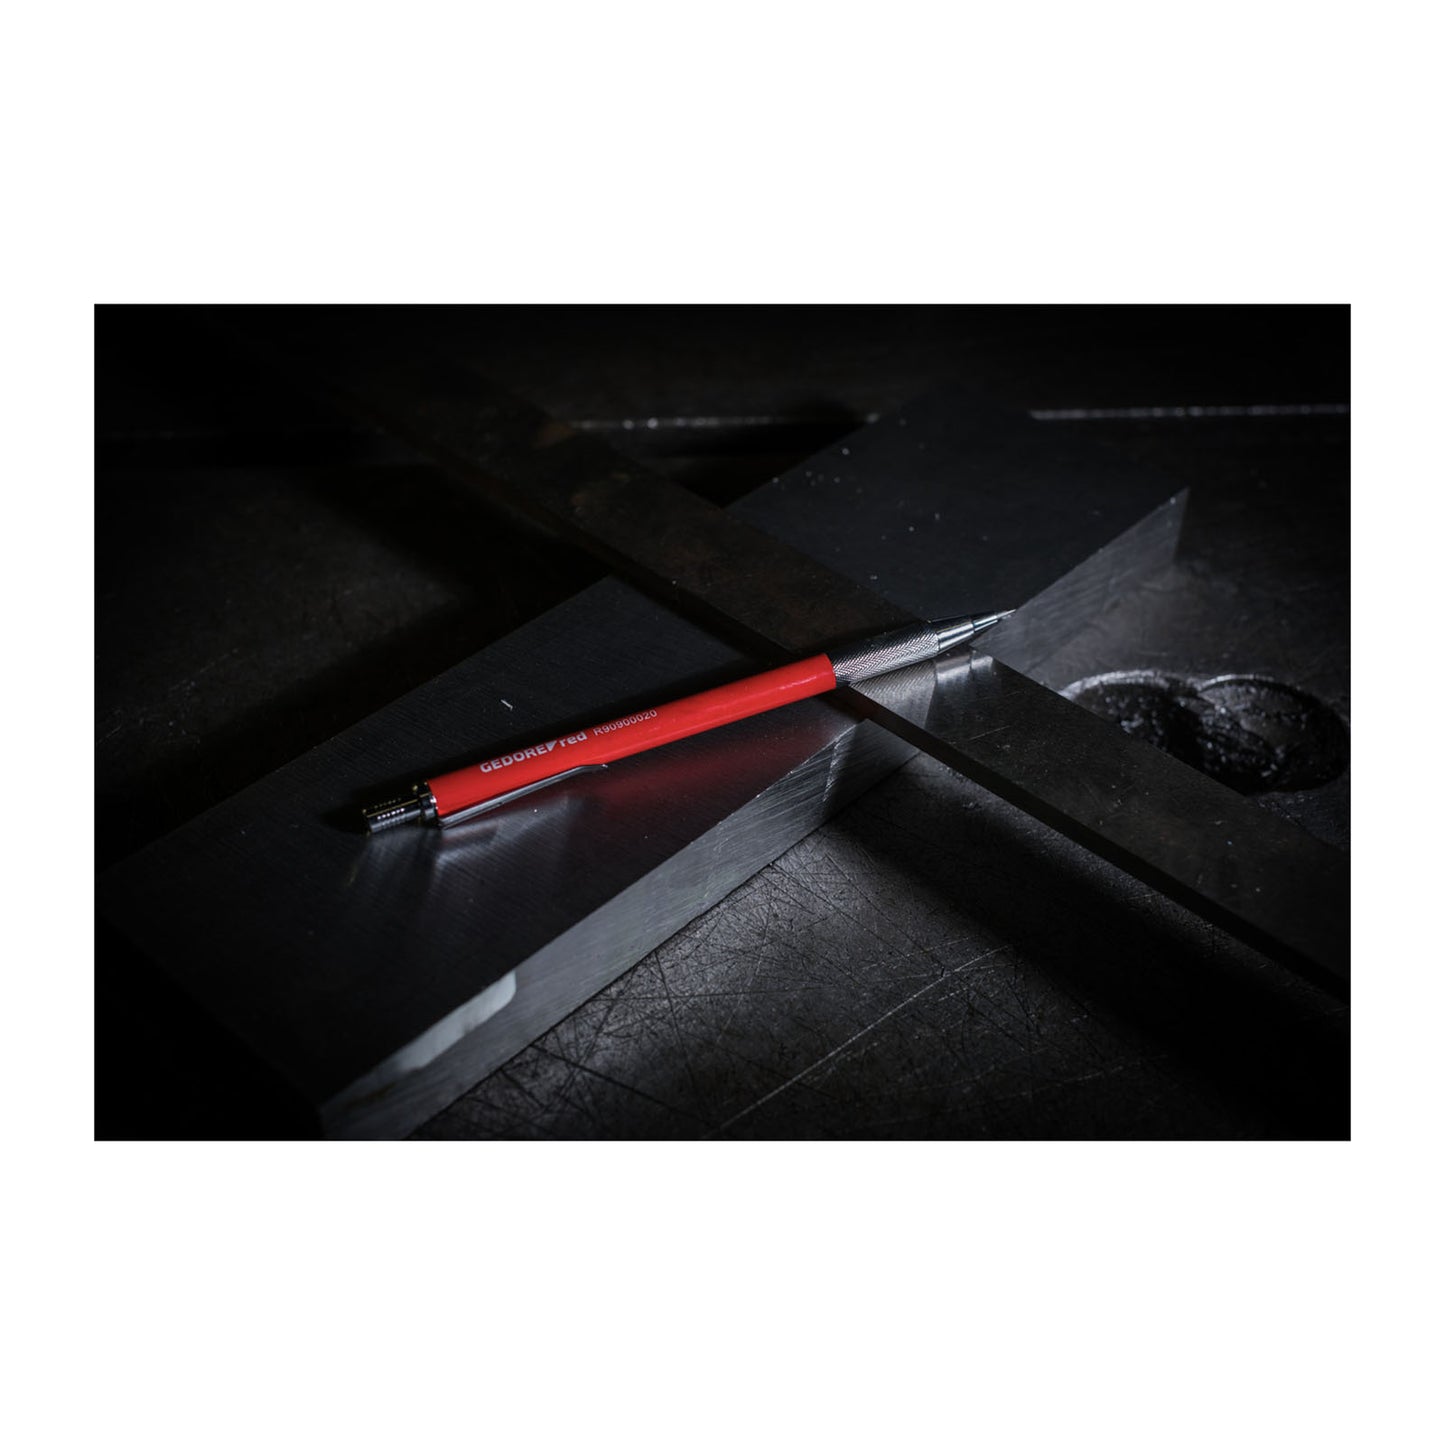 GEDORE red R90900020 - Punta de trazar de carburo de tungsteno con clip 150mm (3301433)